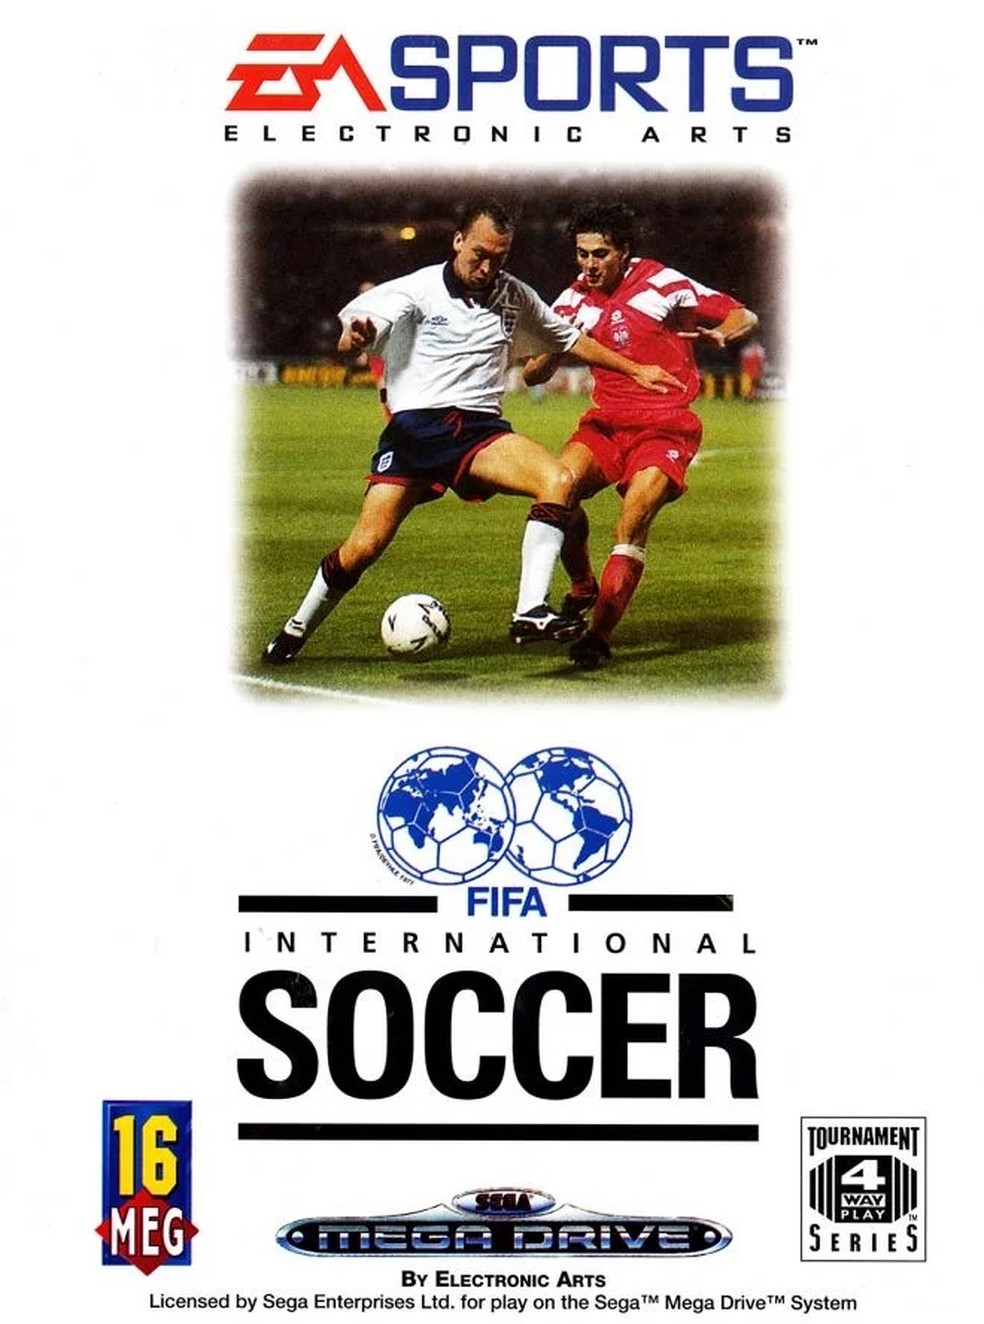 Após 30 anos, EA Sports mudará nome do jogo Fifa - Tecnologia - Jornal NH